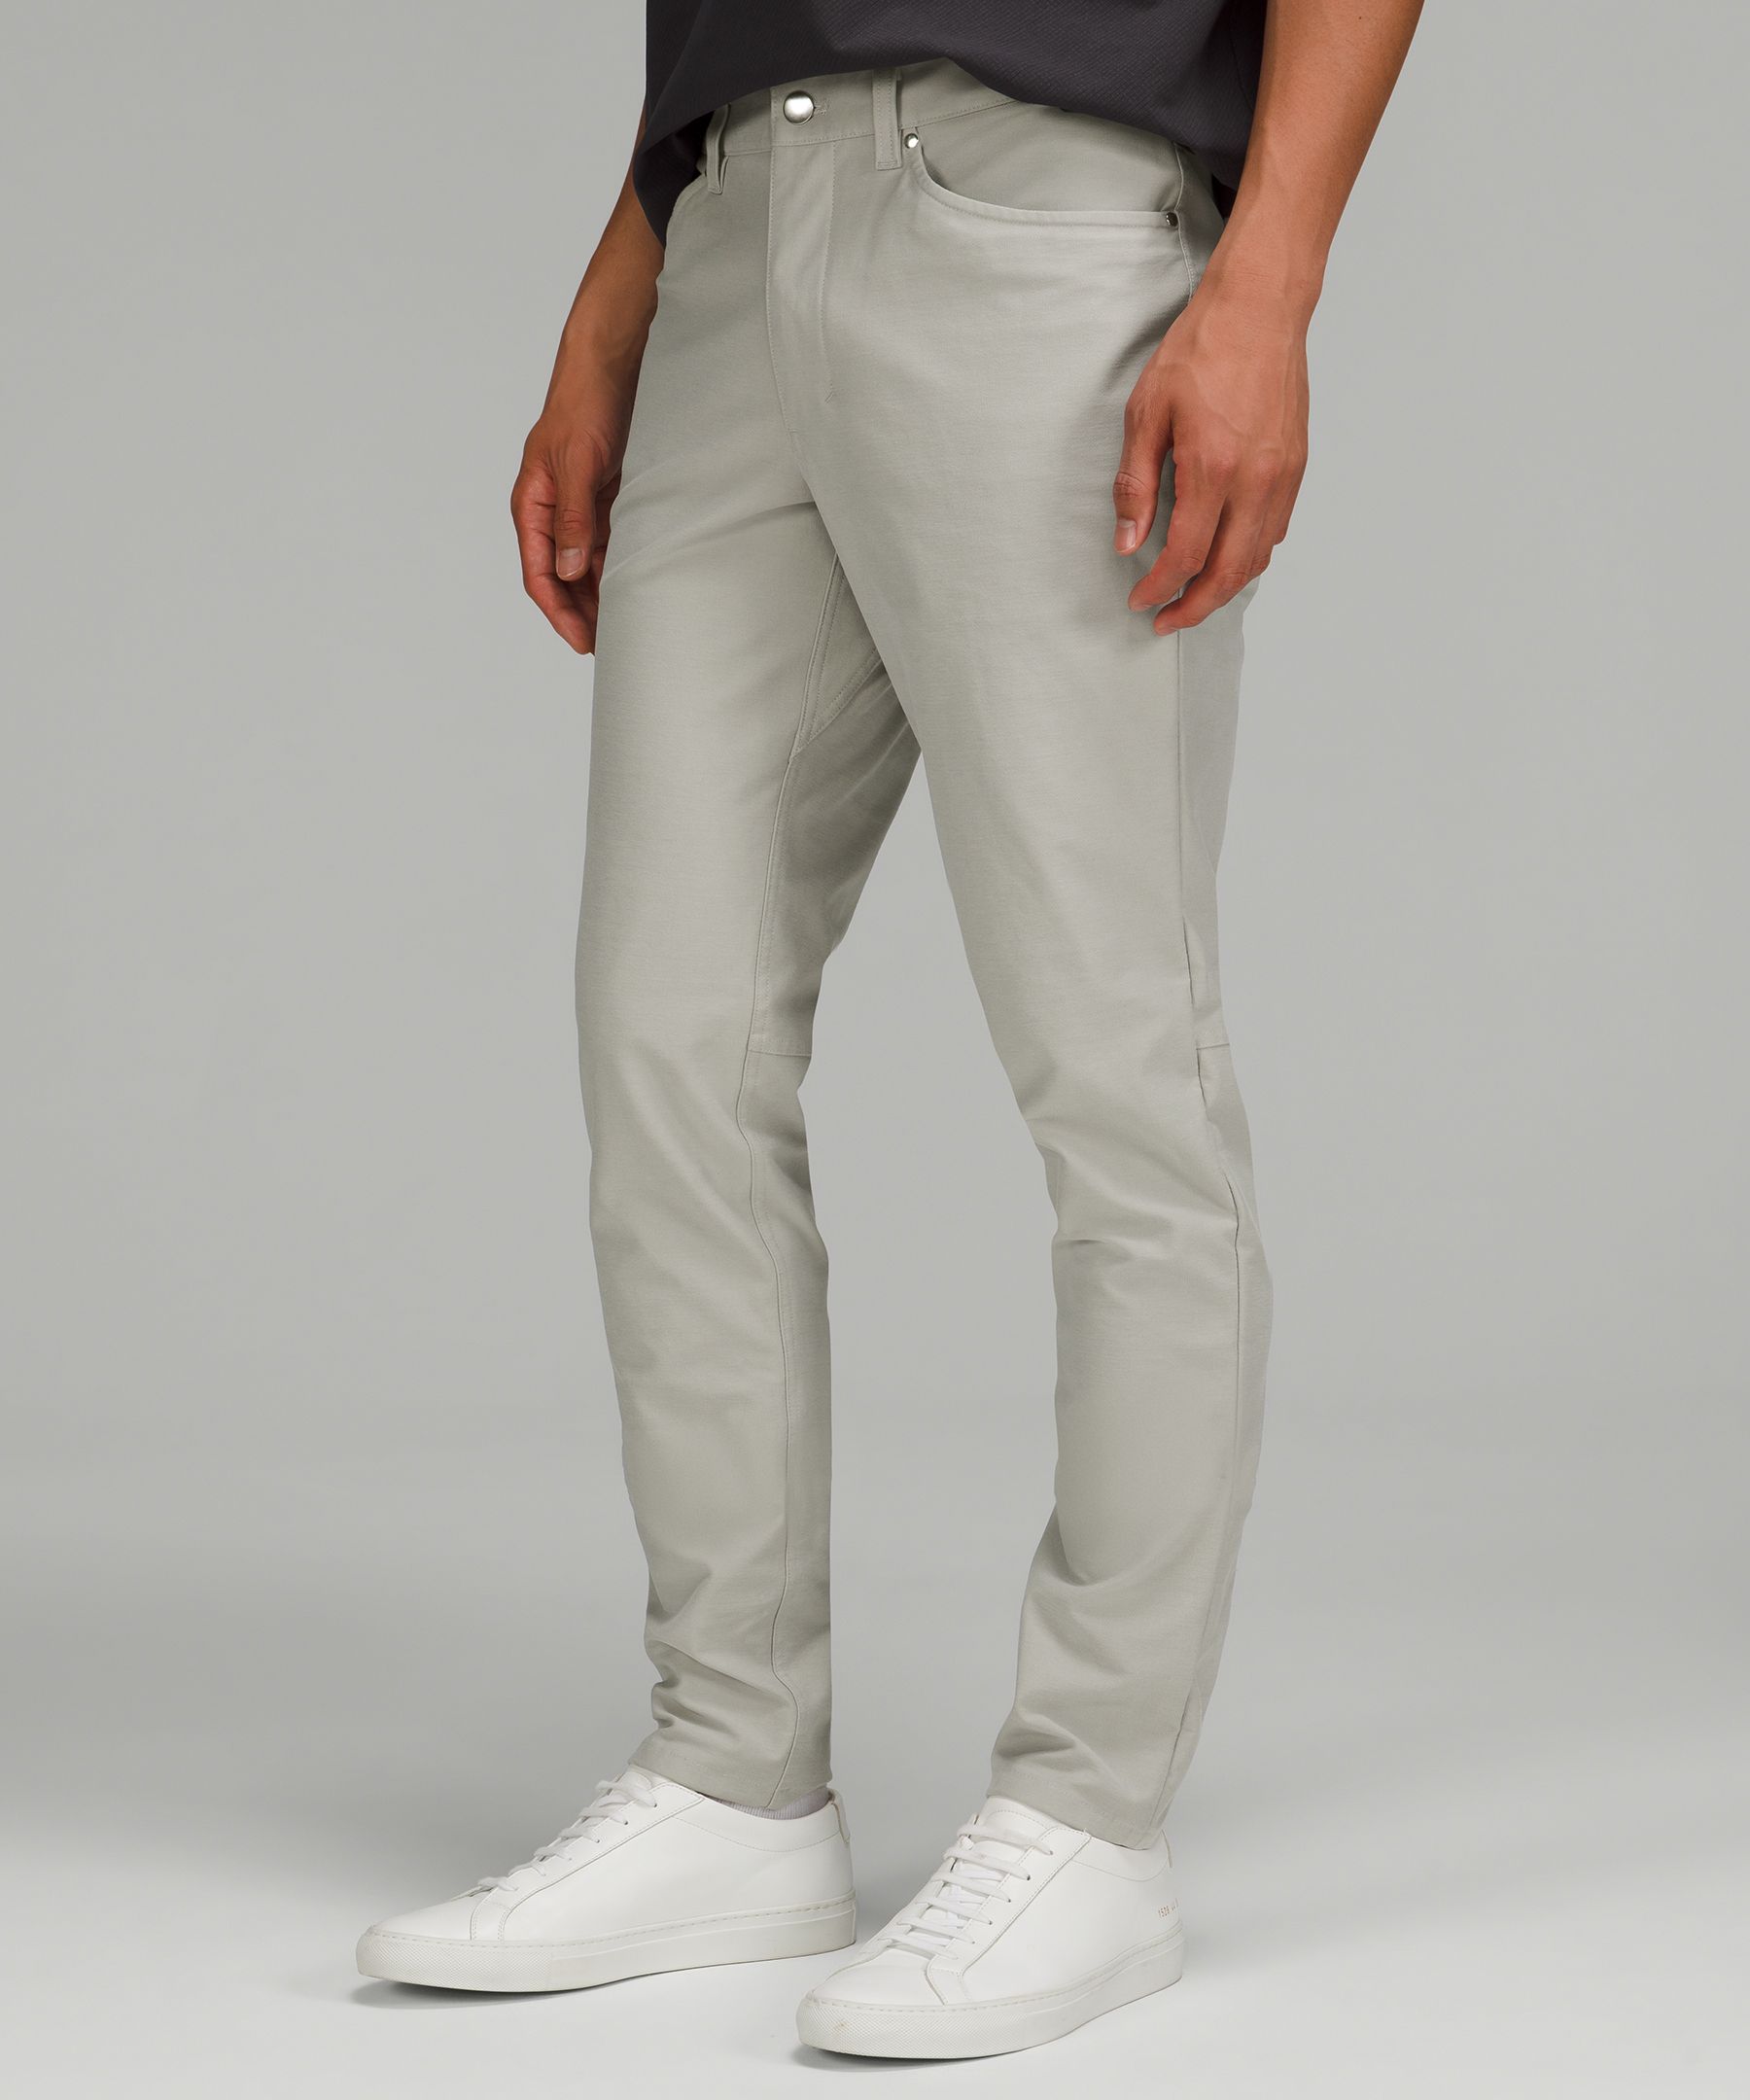 ABC Slim-Fit 5 Pocket Pant 34L *Utilitech, Men's Trousers, lululemon